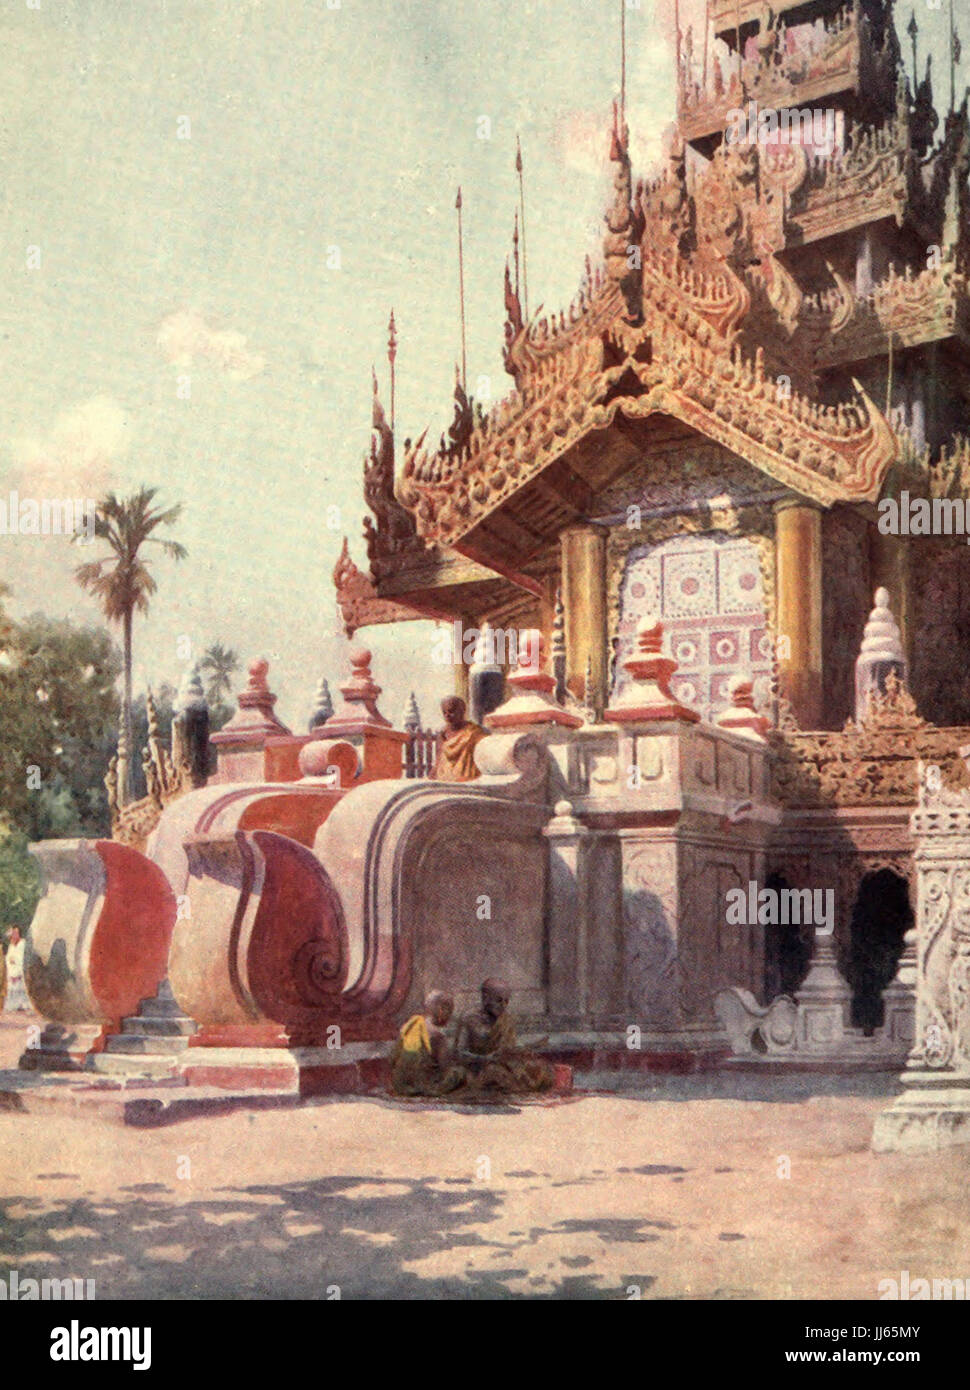 The Queen's Golden Monastery, Mandalay, Burma, circa 1908 Stock Photo